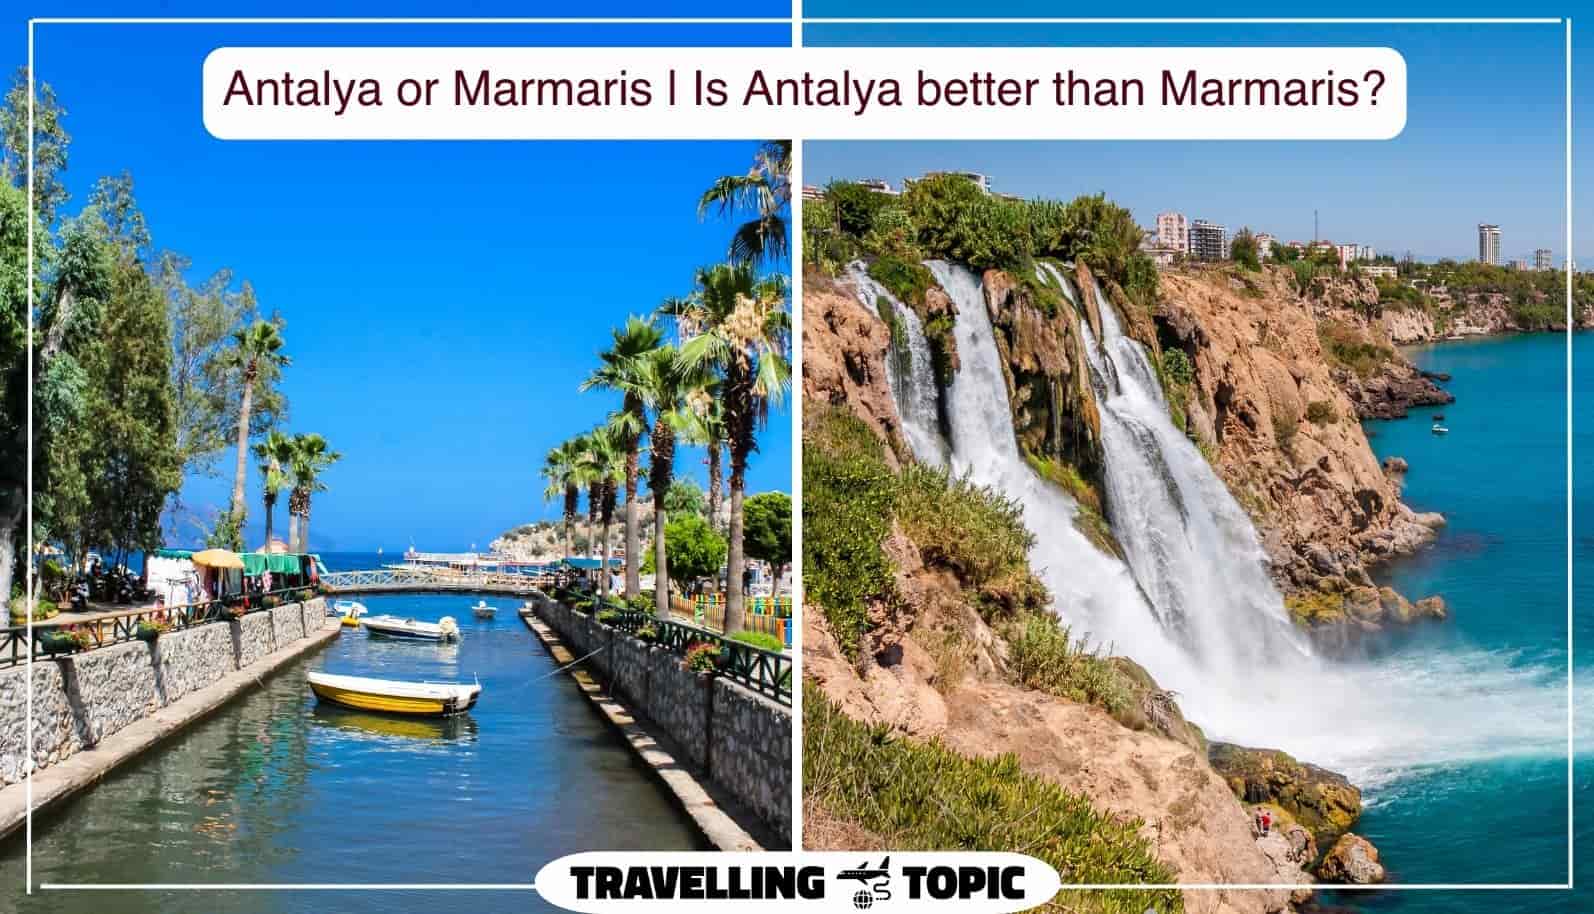 Antalya or Marmaris Is Antalya better than Marmaris